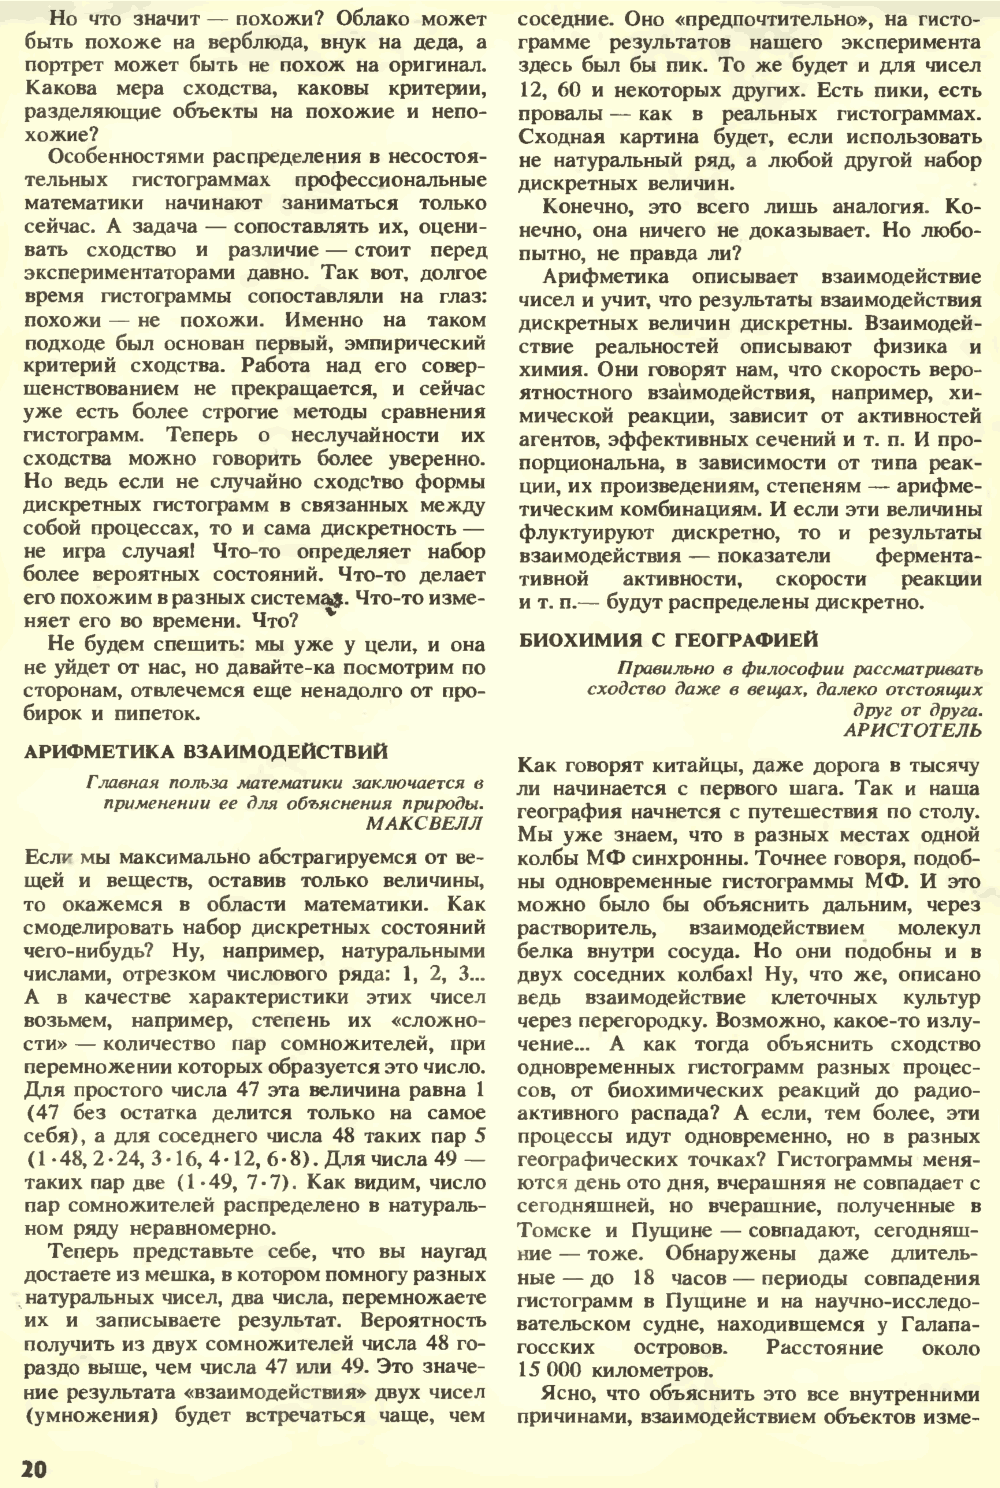 Внешняя сила. С.Н. Катасонов. Химия и жизнь, 1990, №7, с.16-22. Фотокопия №5